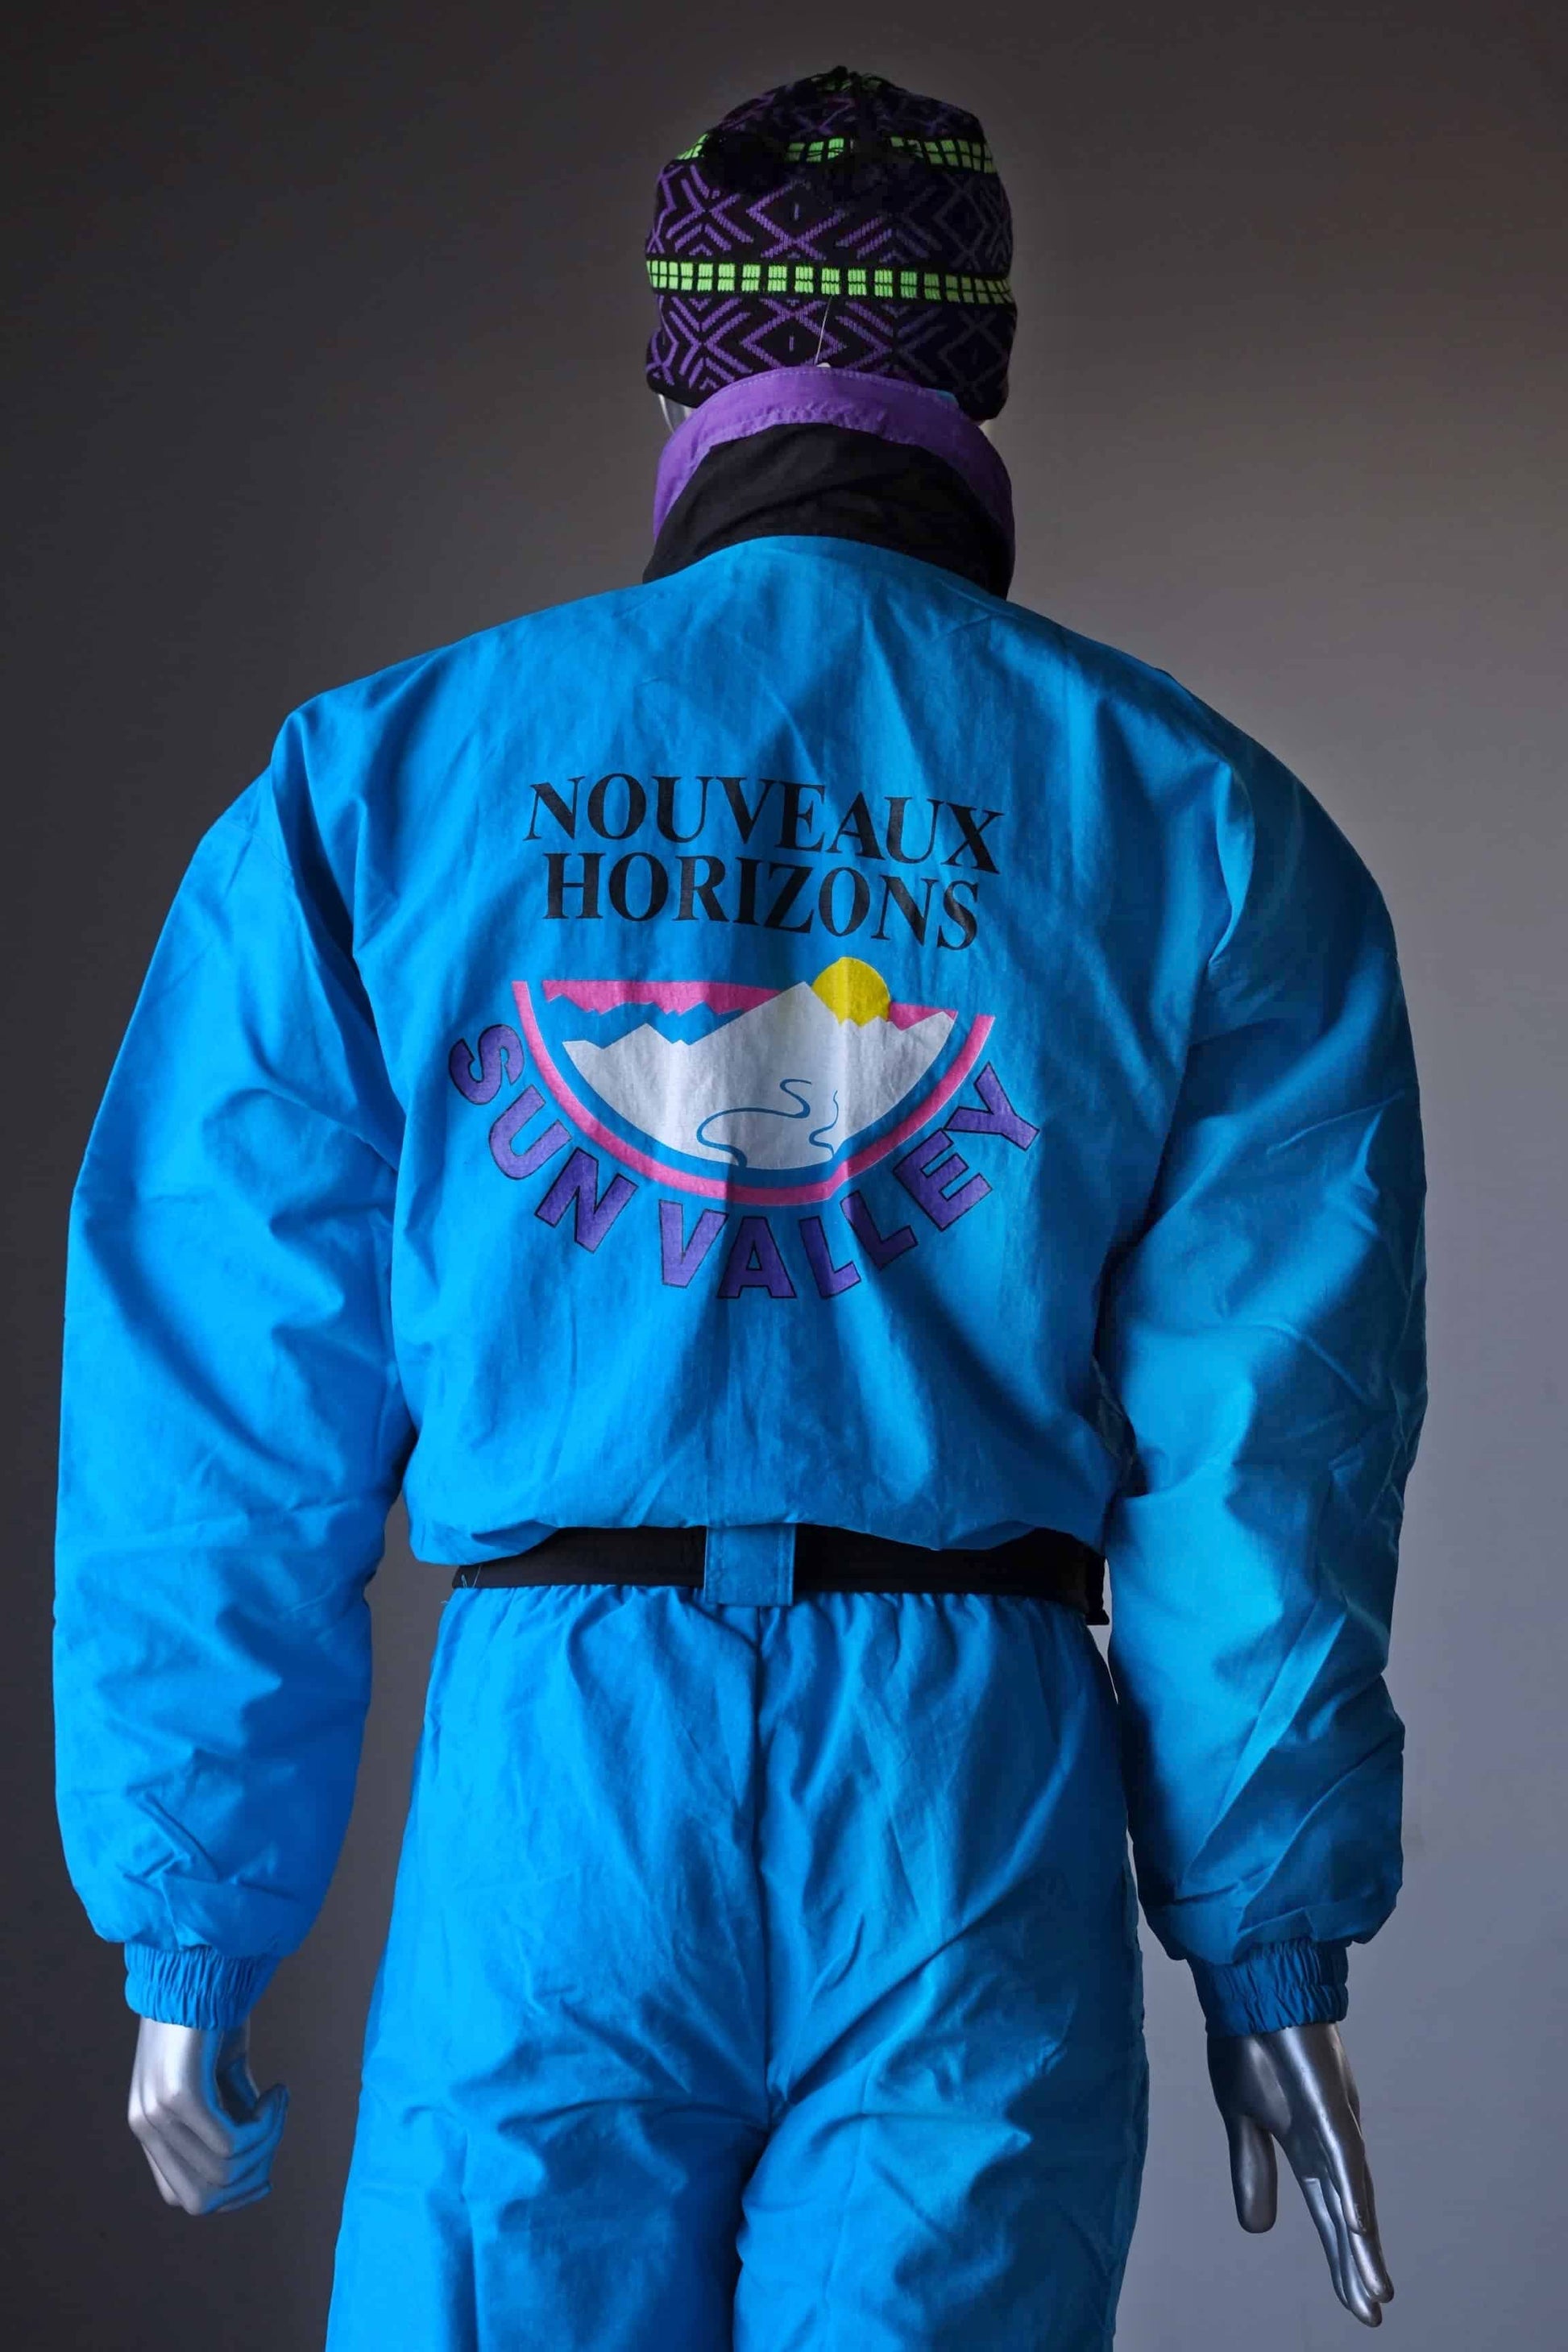 Vintage Early 90's Men's Ski Suit blue backside